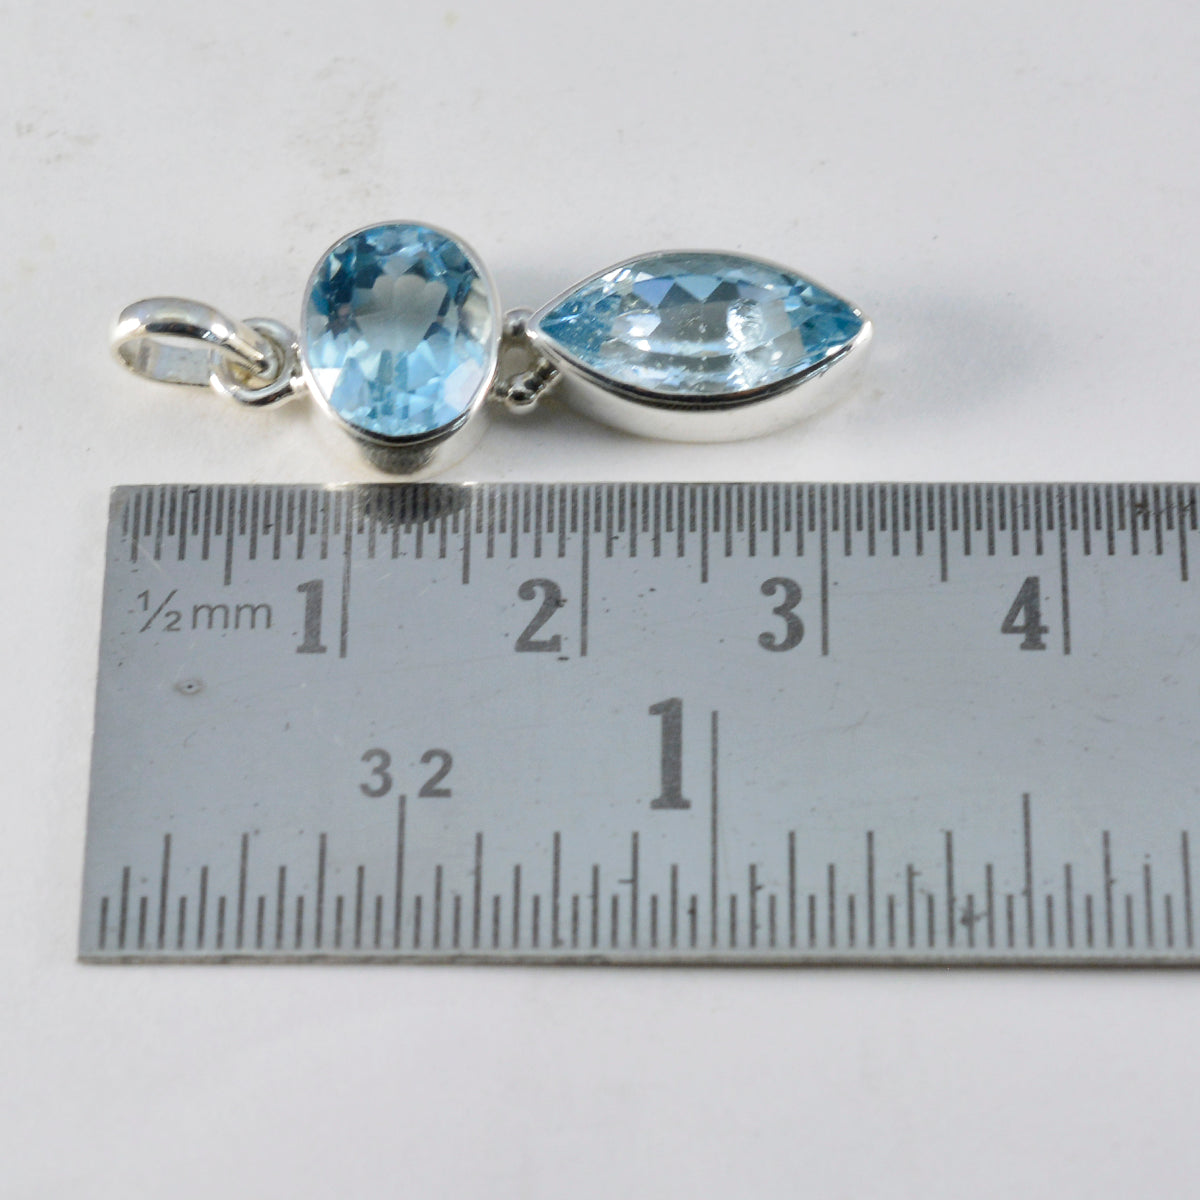 Riyo exquisitas gemas multifacetadas azul topacio azul colgante de plata maciza regalo para el Viernes Santo